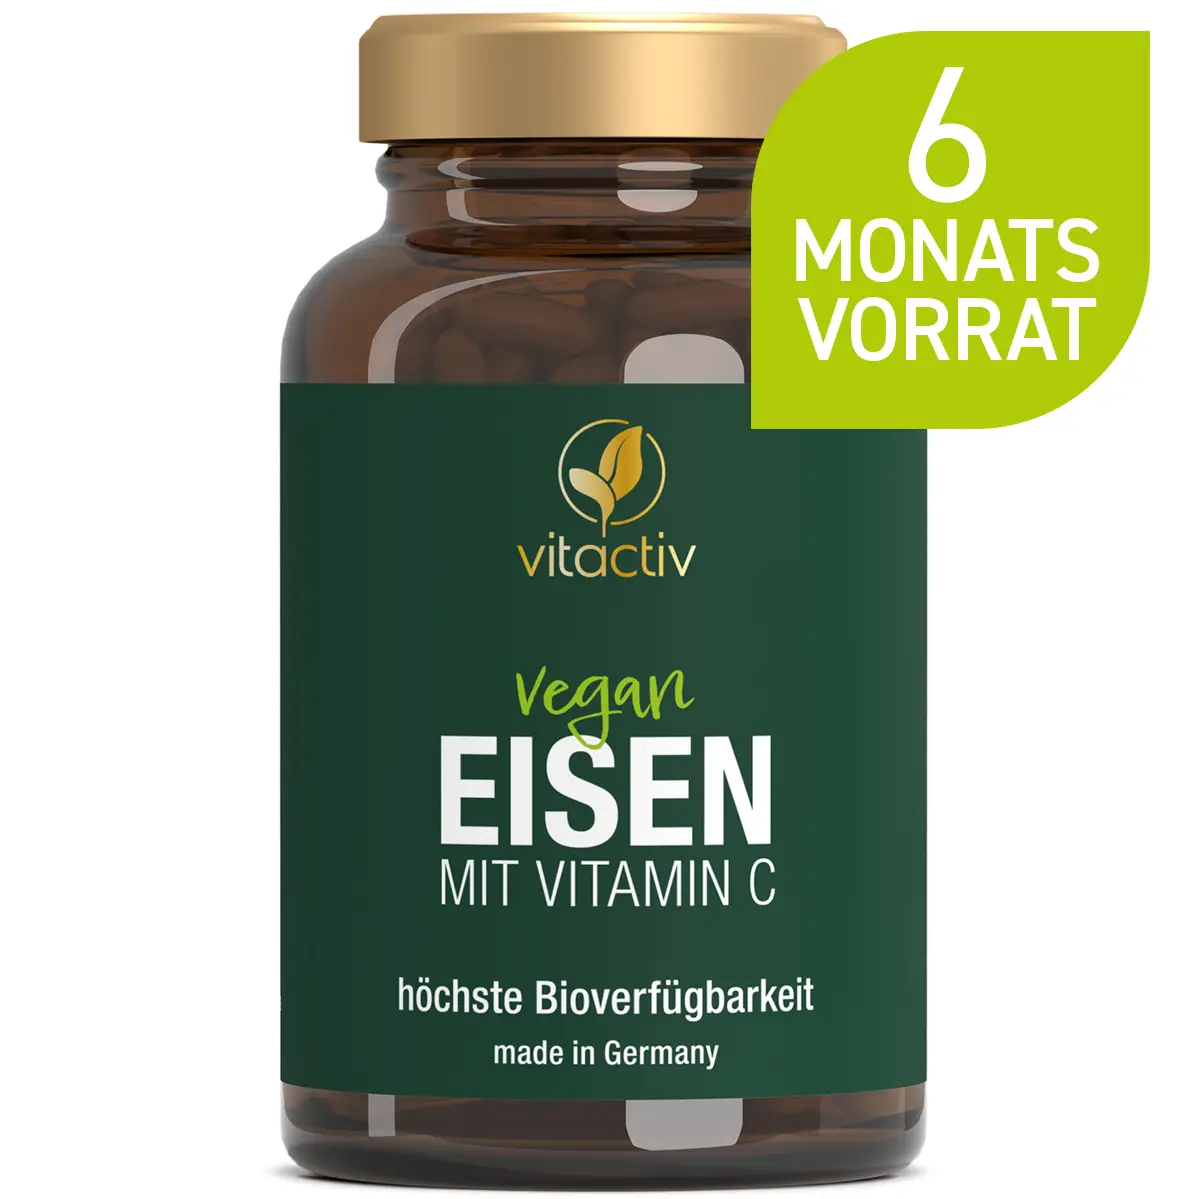 A821_Eisen-mit-Vitamin-C-18839884-01-produkt-strer-1200px_1920x1920